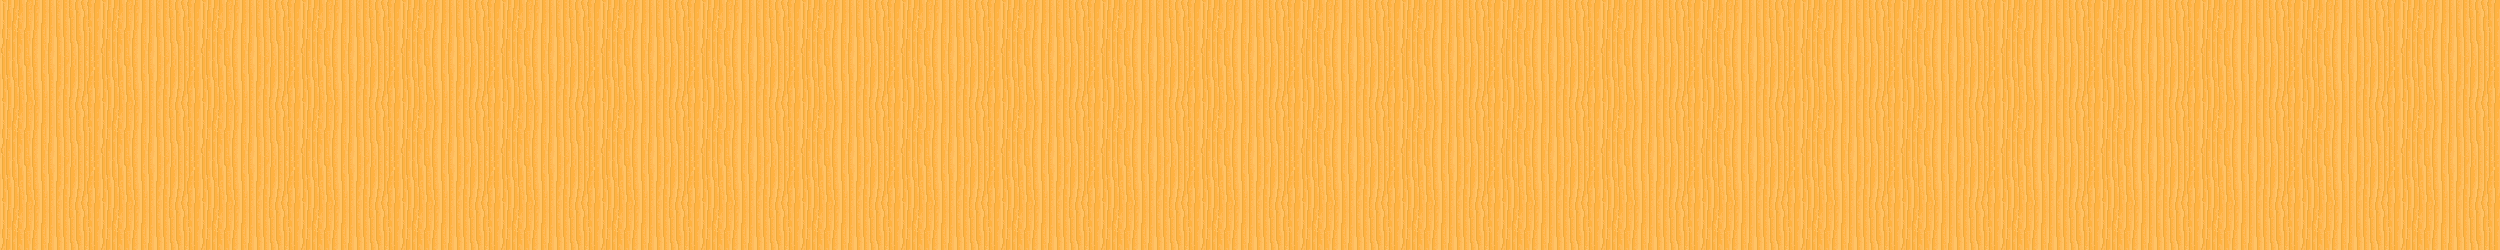 Yellow pine divider